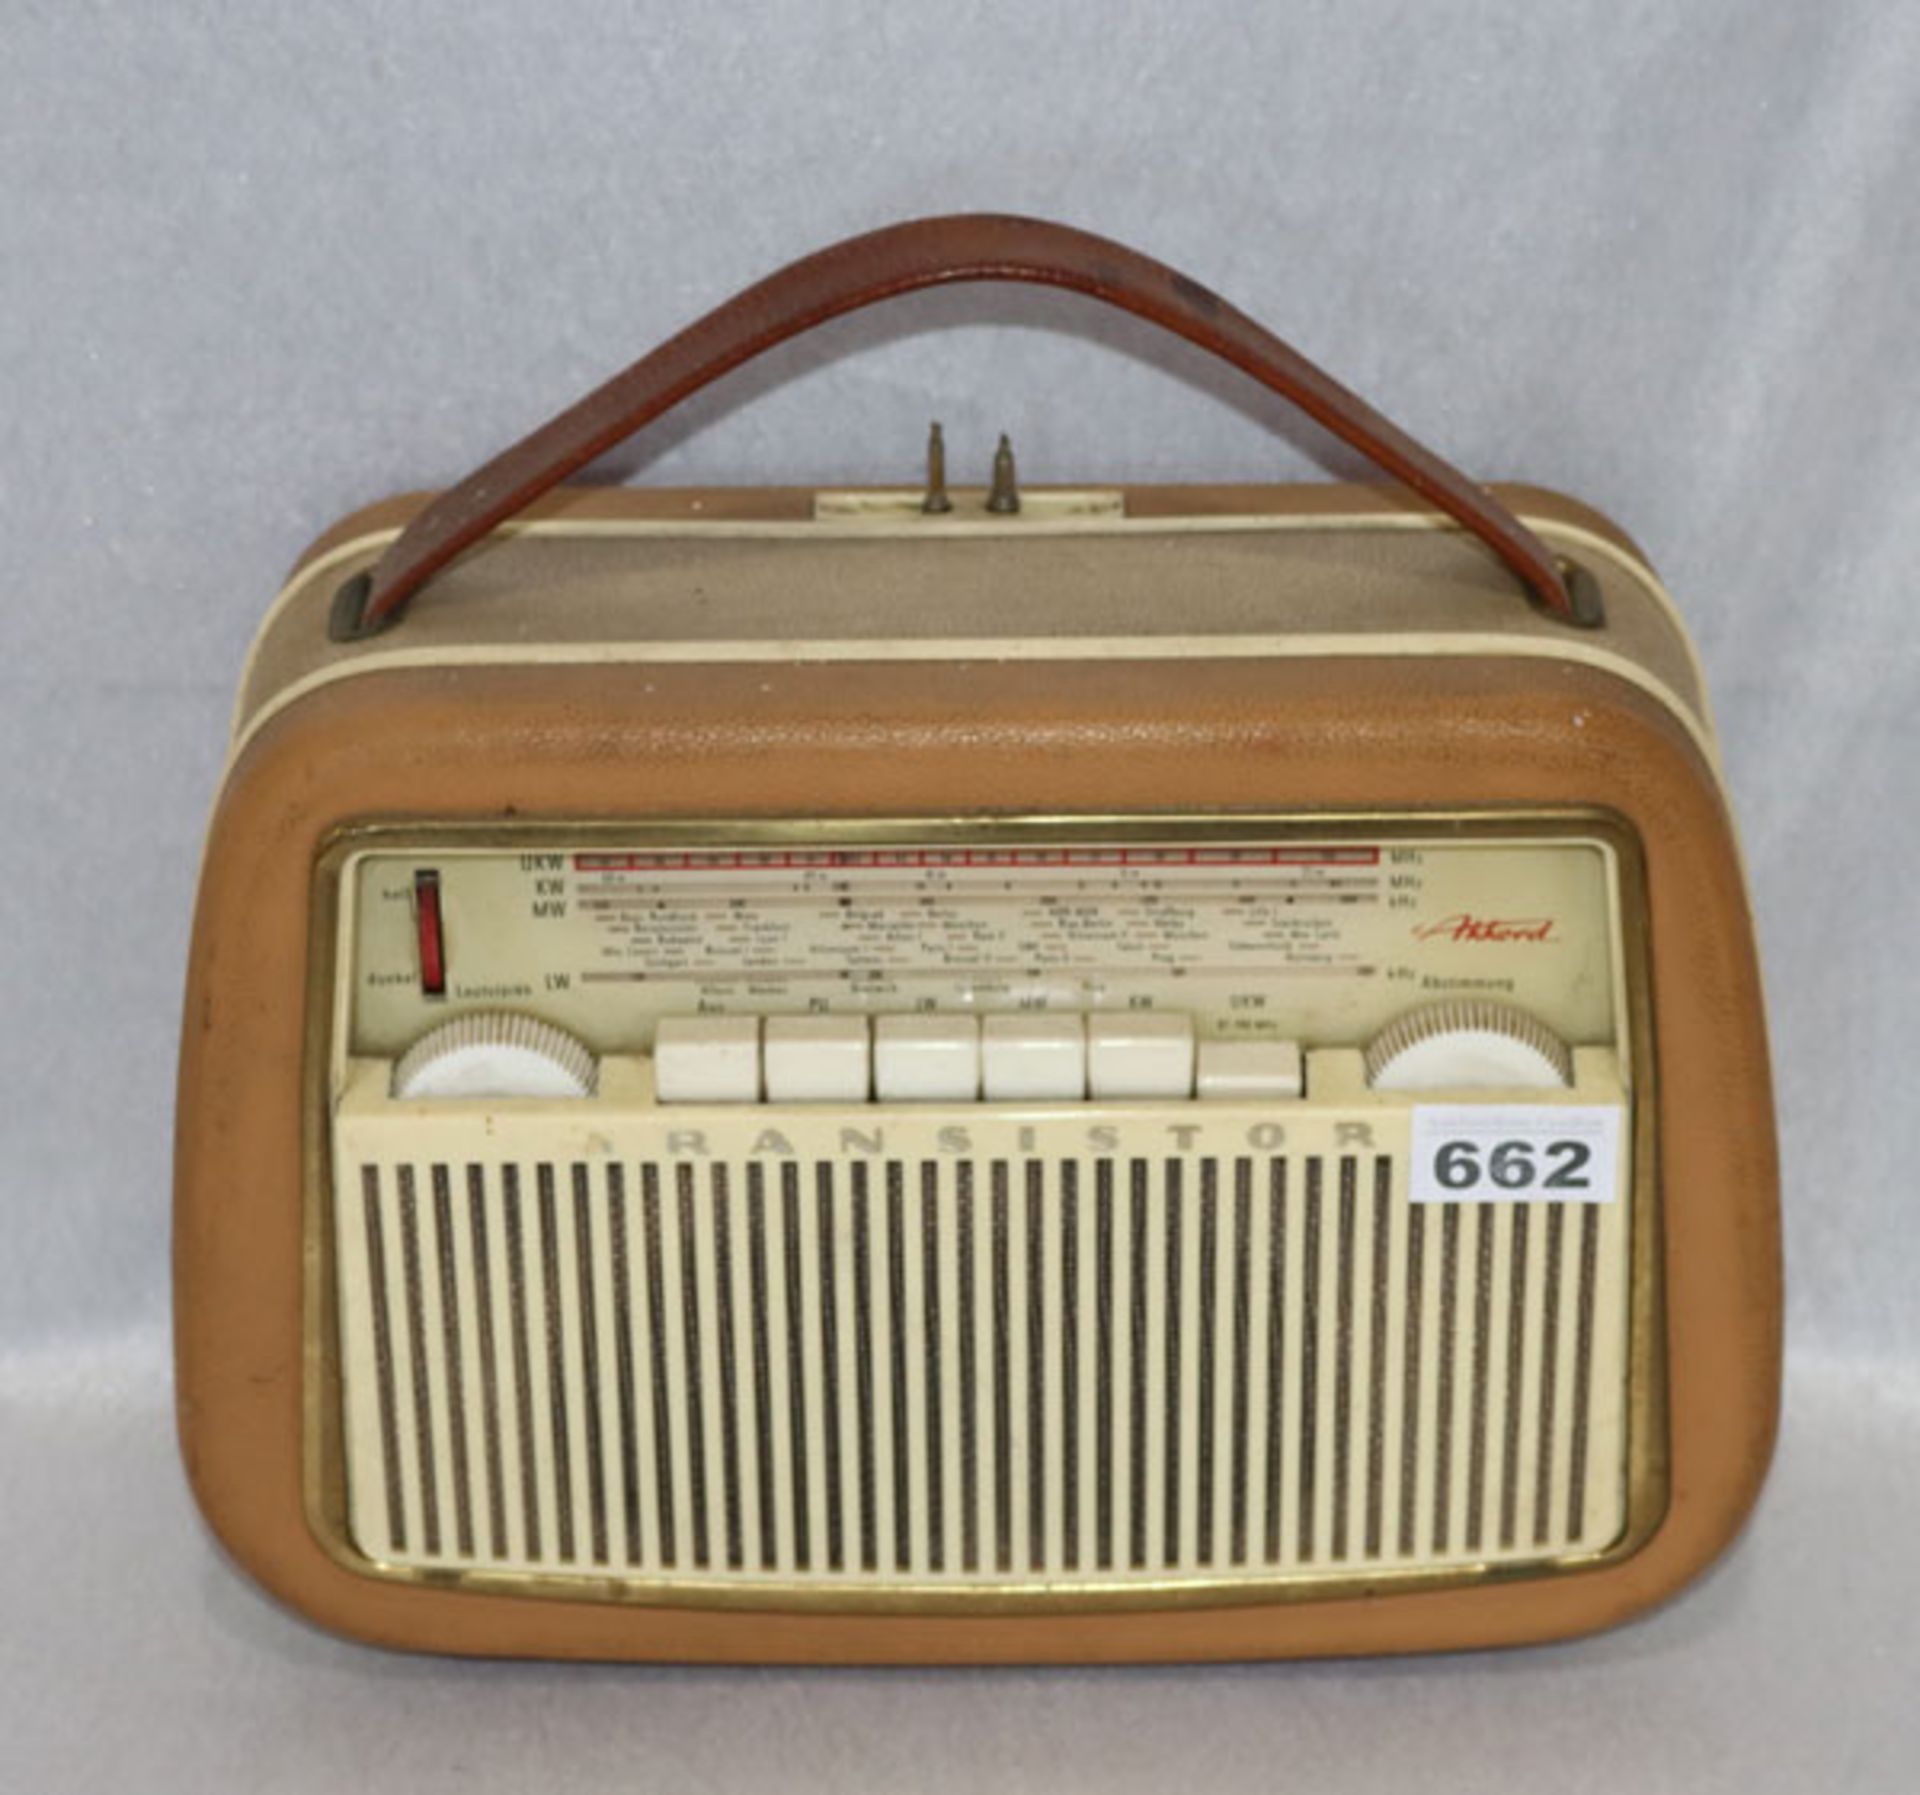 Kofferradio Akkord Transistor, Funktion nicht geprüft, H 22 cm, B 31 cm, T 12 cm, Alters- und